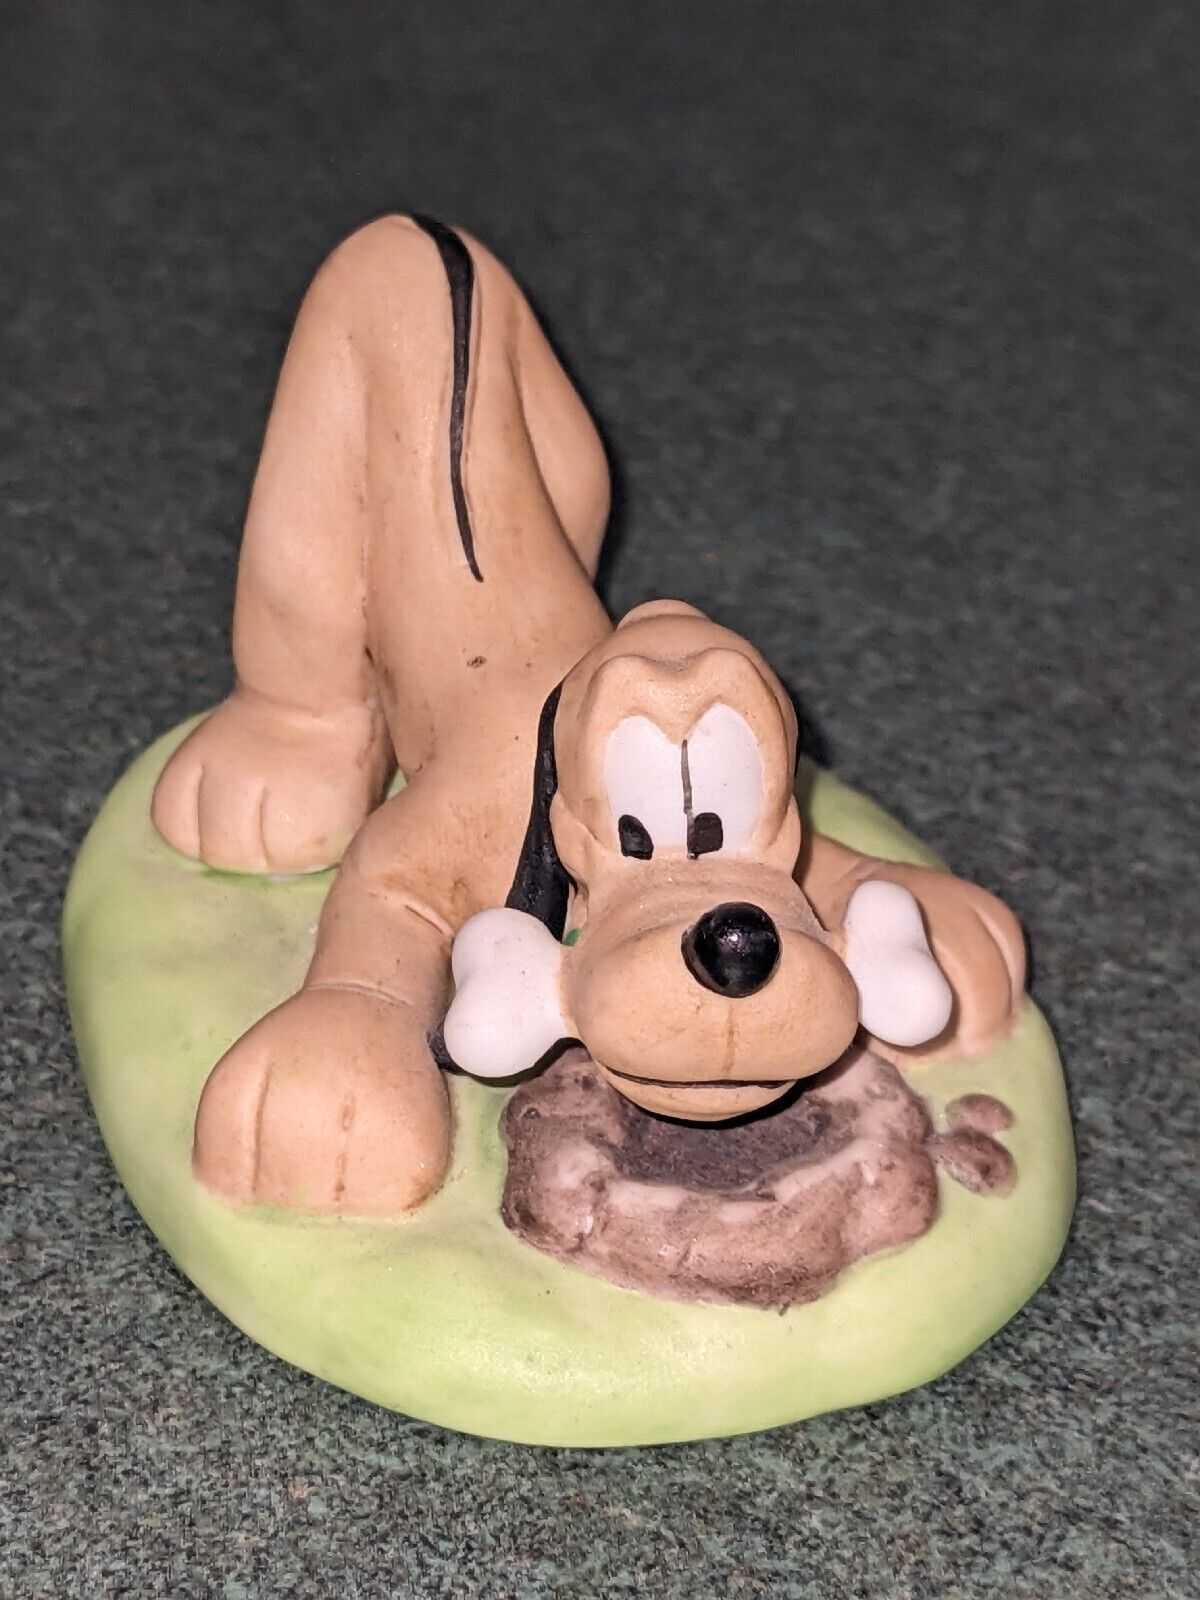 Disney Pluto Grolier Porcelain Ornament figurine Premier Edition